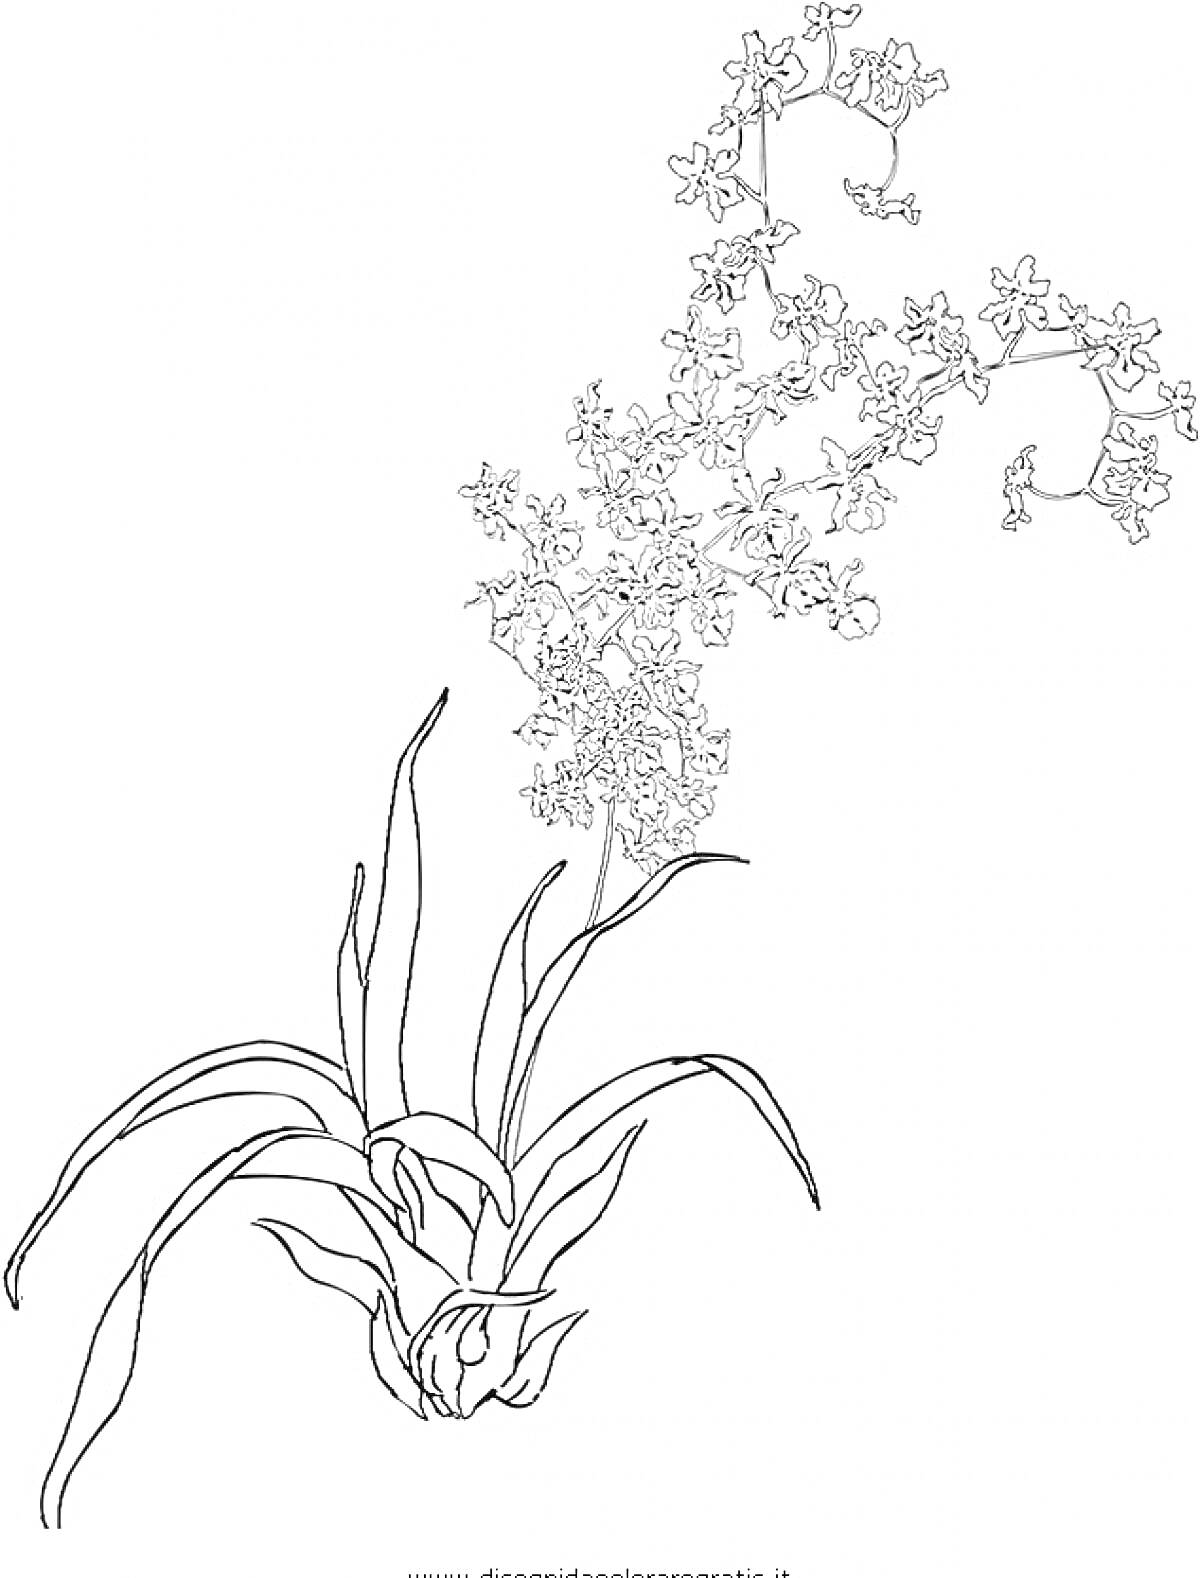 Раскраска Раскраска орхидеи с длинным стеблем и многочисленными мелкими цветками